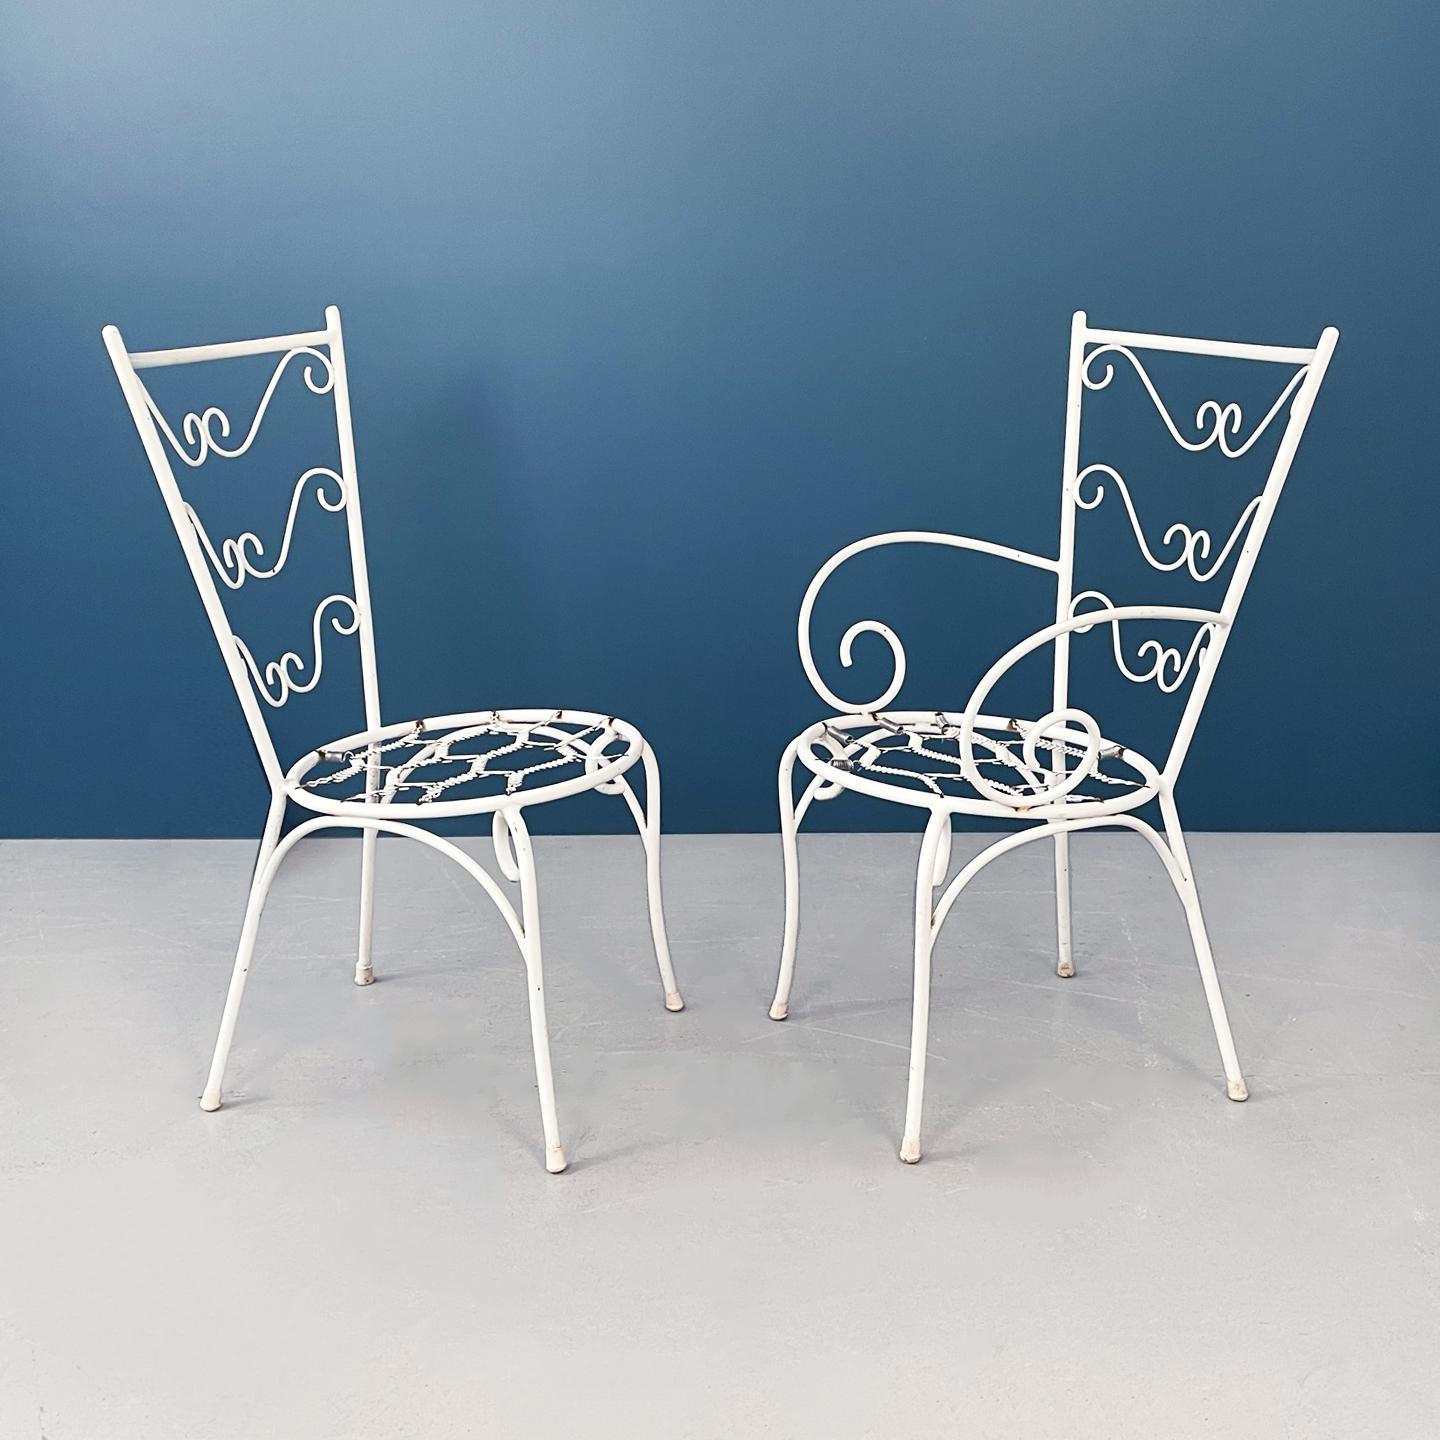 Italienische Gartenstühle aus der Mitte des Jahrhunderts aus weißem Schmiedeeisen und Stoff, 1960er Jahre.
Gartenset aus 4 Stühlen. Die Außenstühle sind aus weiß lackiertem Schmiedeeisen. Der runde Sitz besteht aus einer Reihe von Federn, auf denen